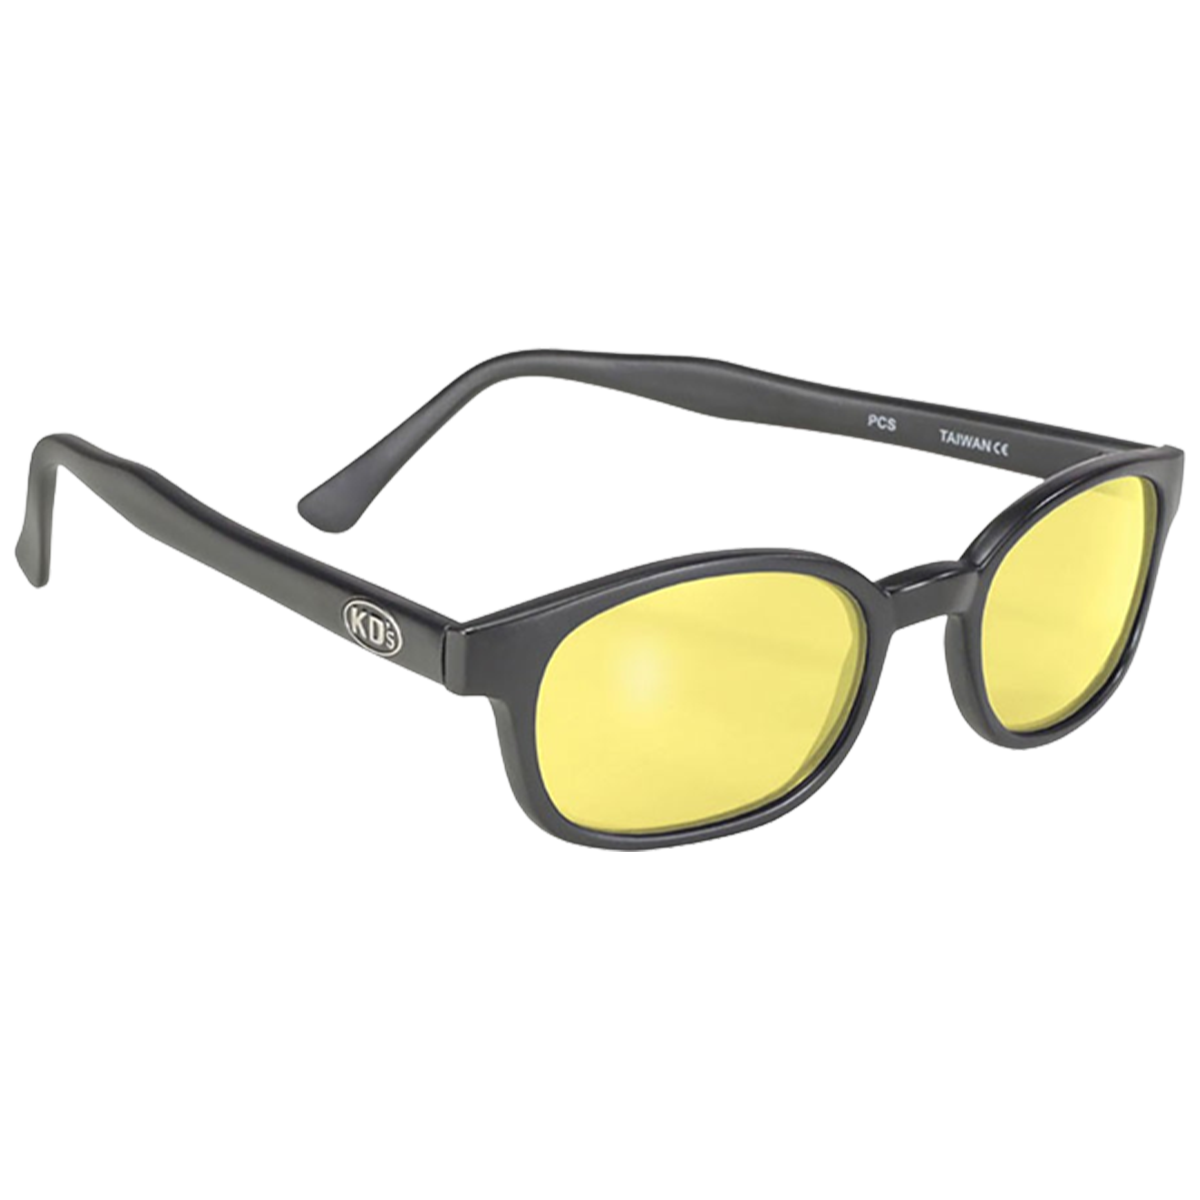 Monture lunettes noires à verres jaunes